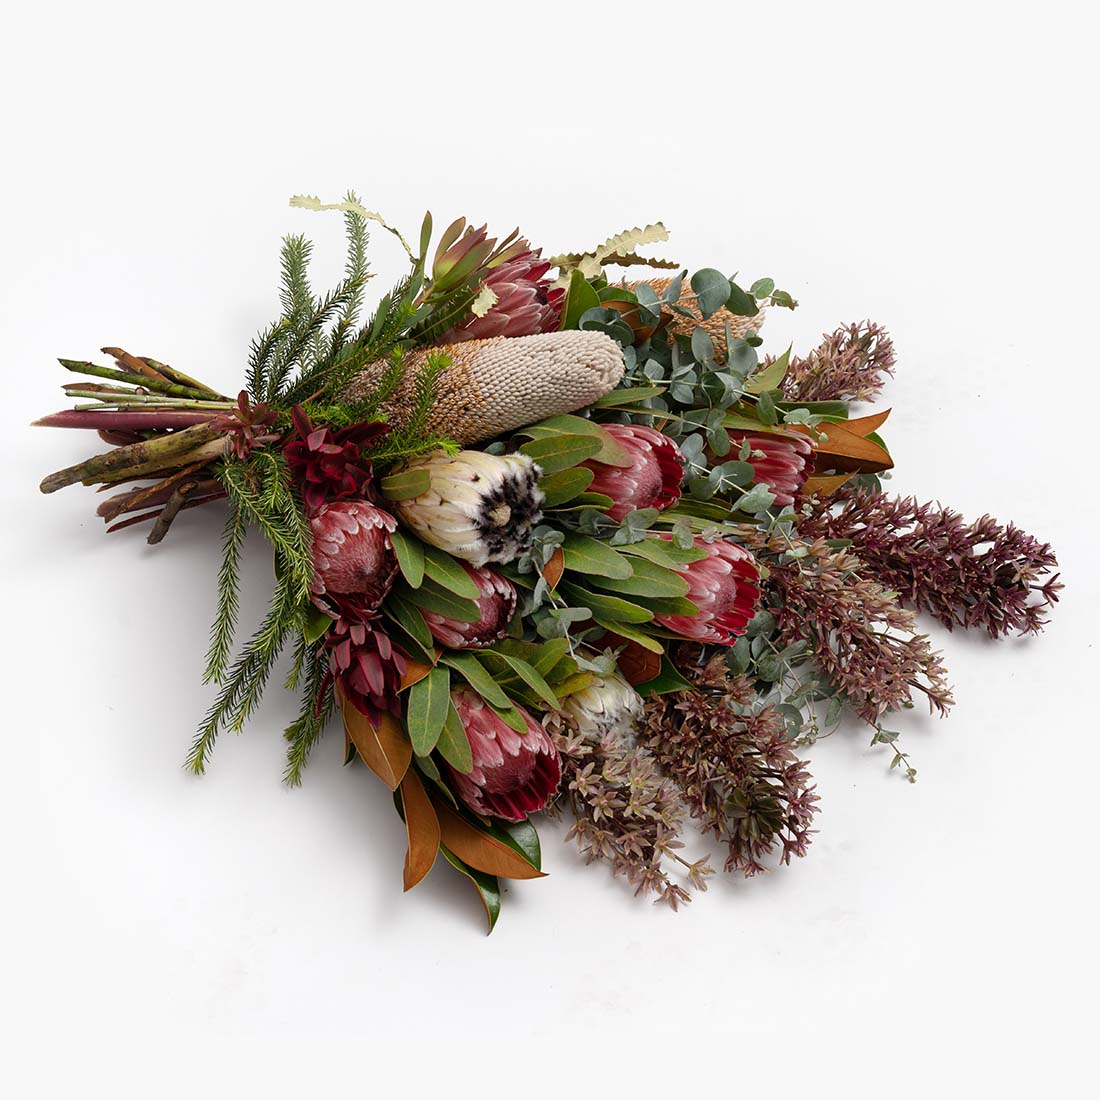 Australian native arrangement by a Geelong florist